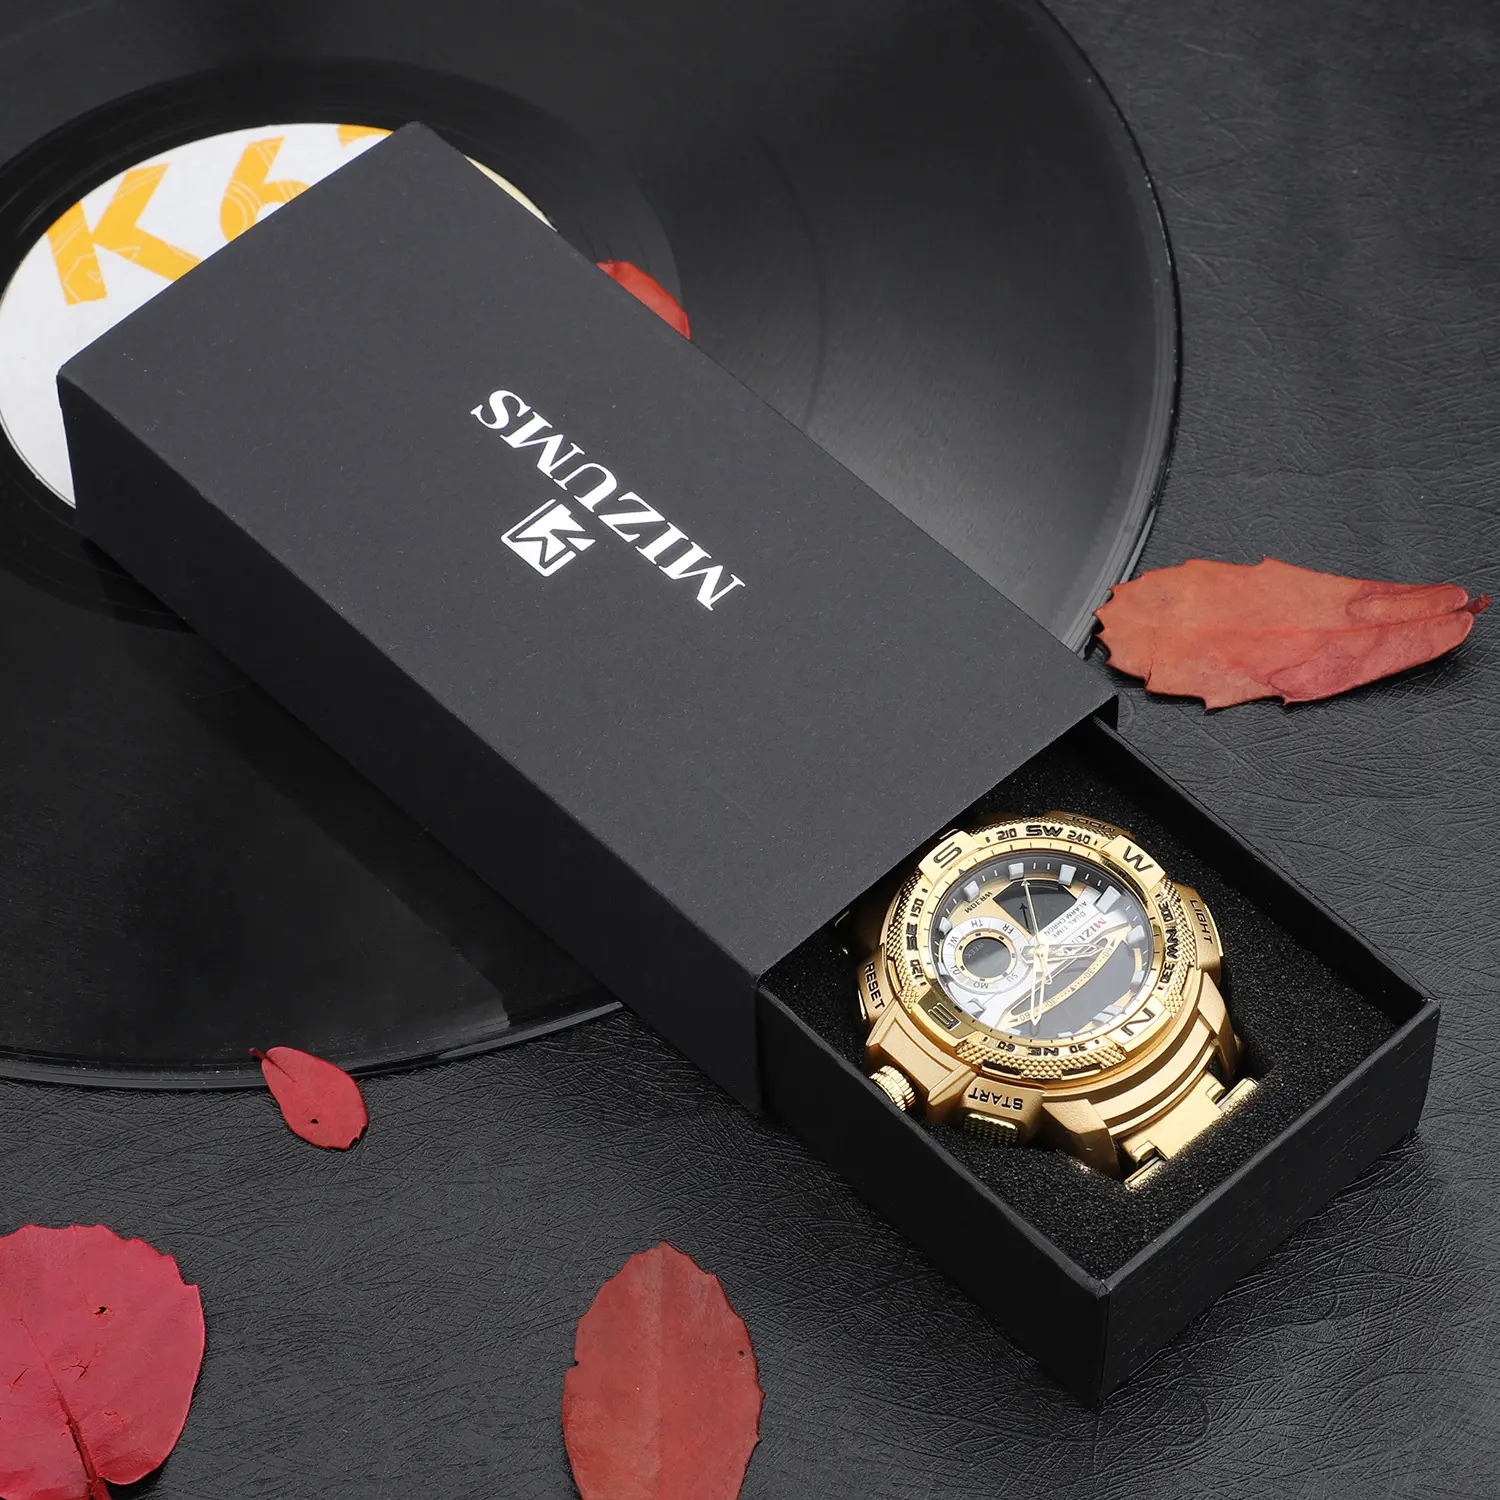 MIZUMS กล่องนาฬิกาที่มีคุณภาพสูงเดิมกล่องนาฬิกา,จะขายกับ MIZUMS นาฬิกา (ไม่ขายแยกต่างหาก) กล่องของขวัญ